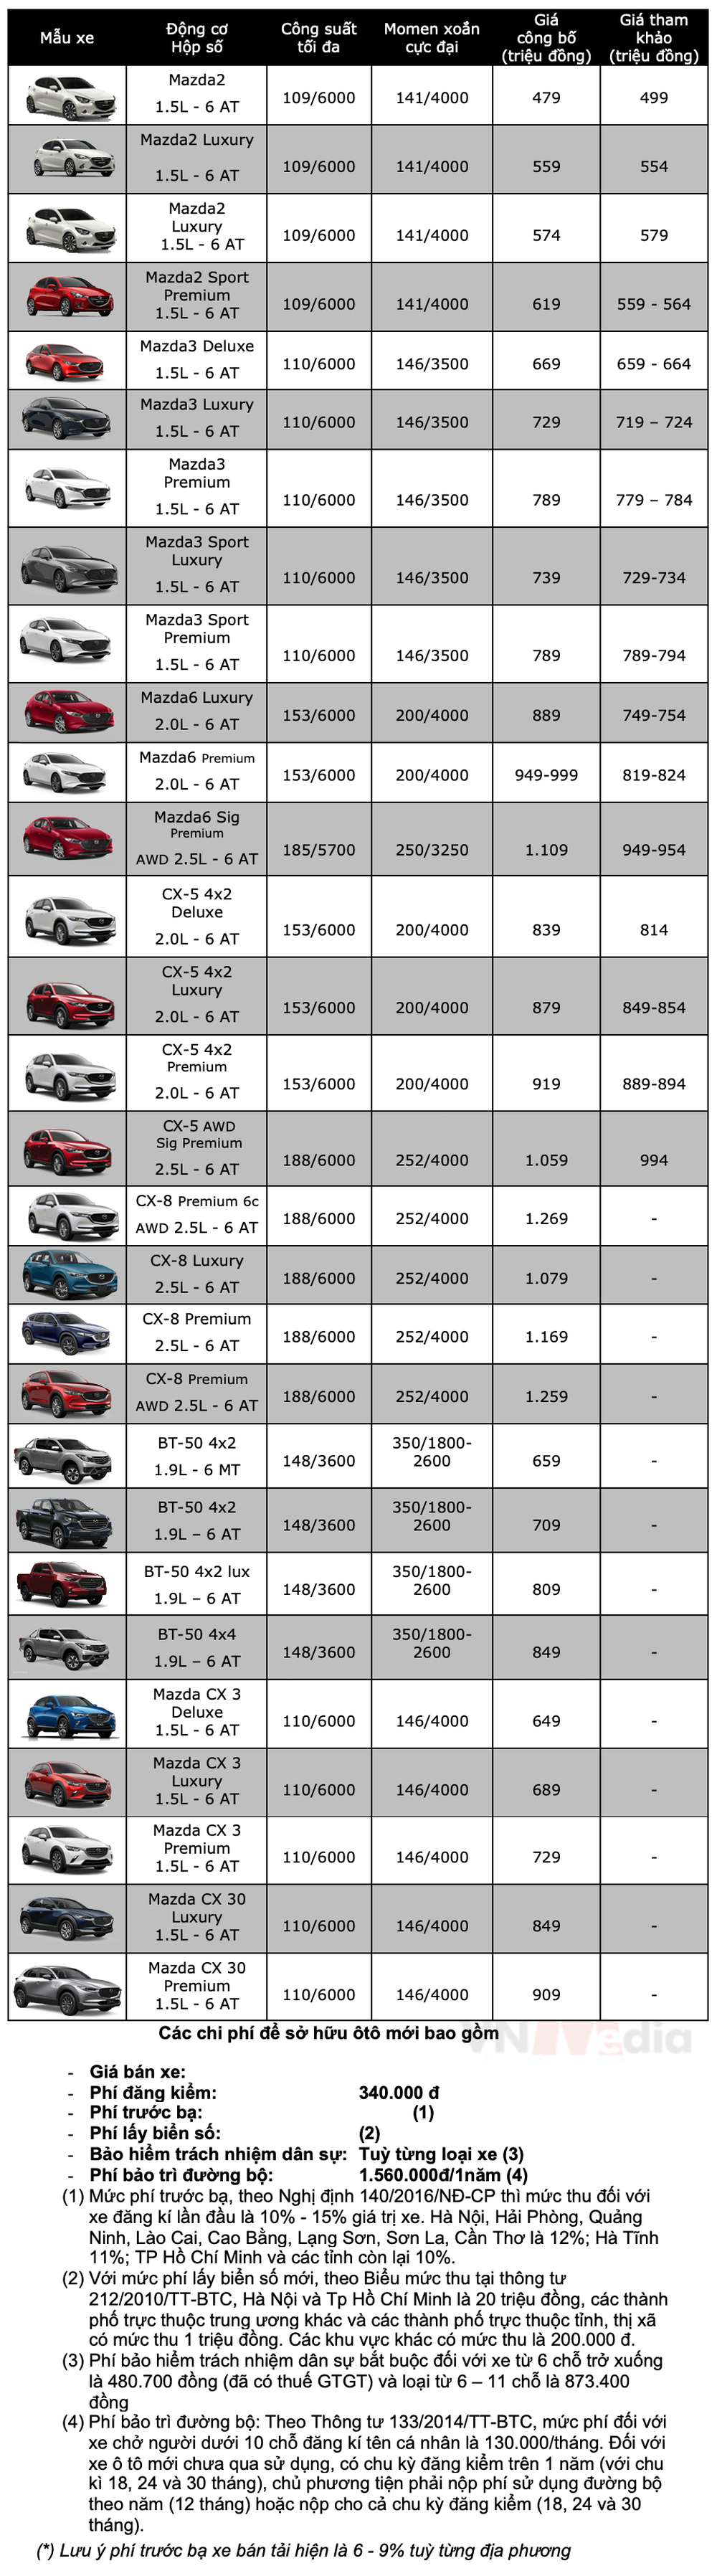 Bảng giá xe Mazda tháng 5: Mazda CX-5 được ưu đãi 110 triệu đồng - Ảnh 2.